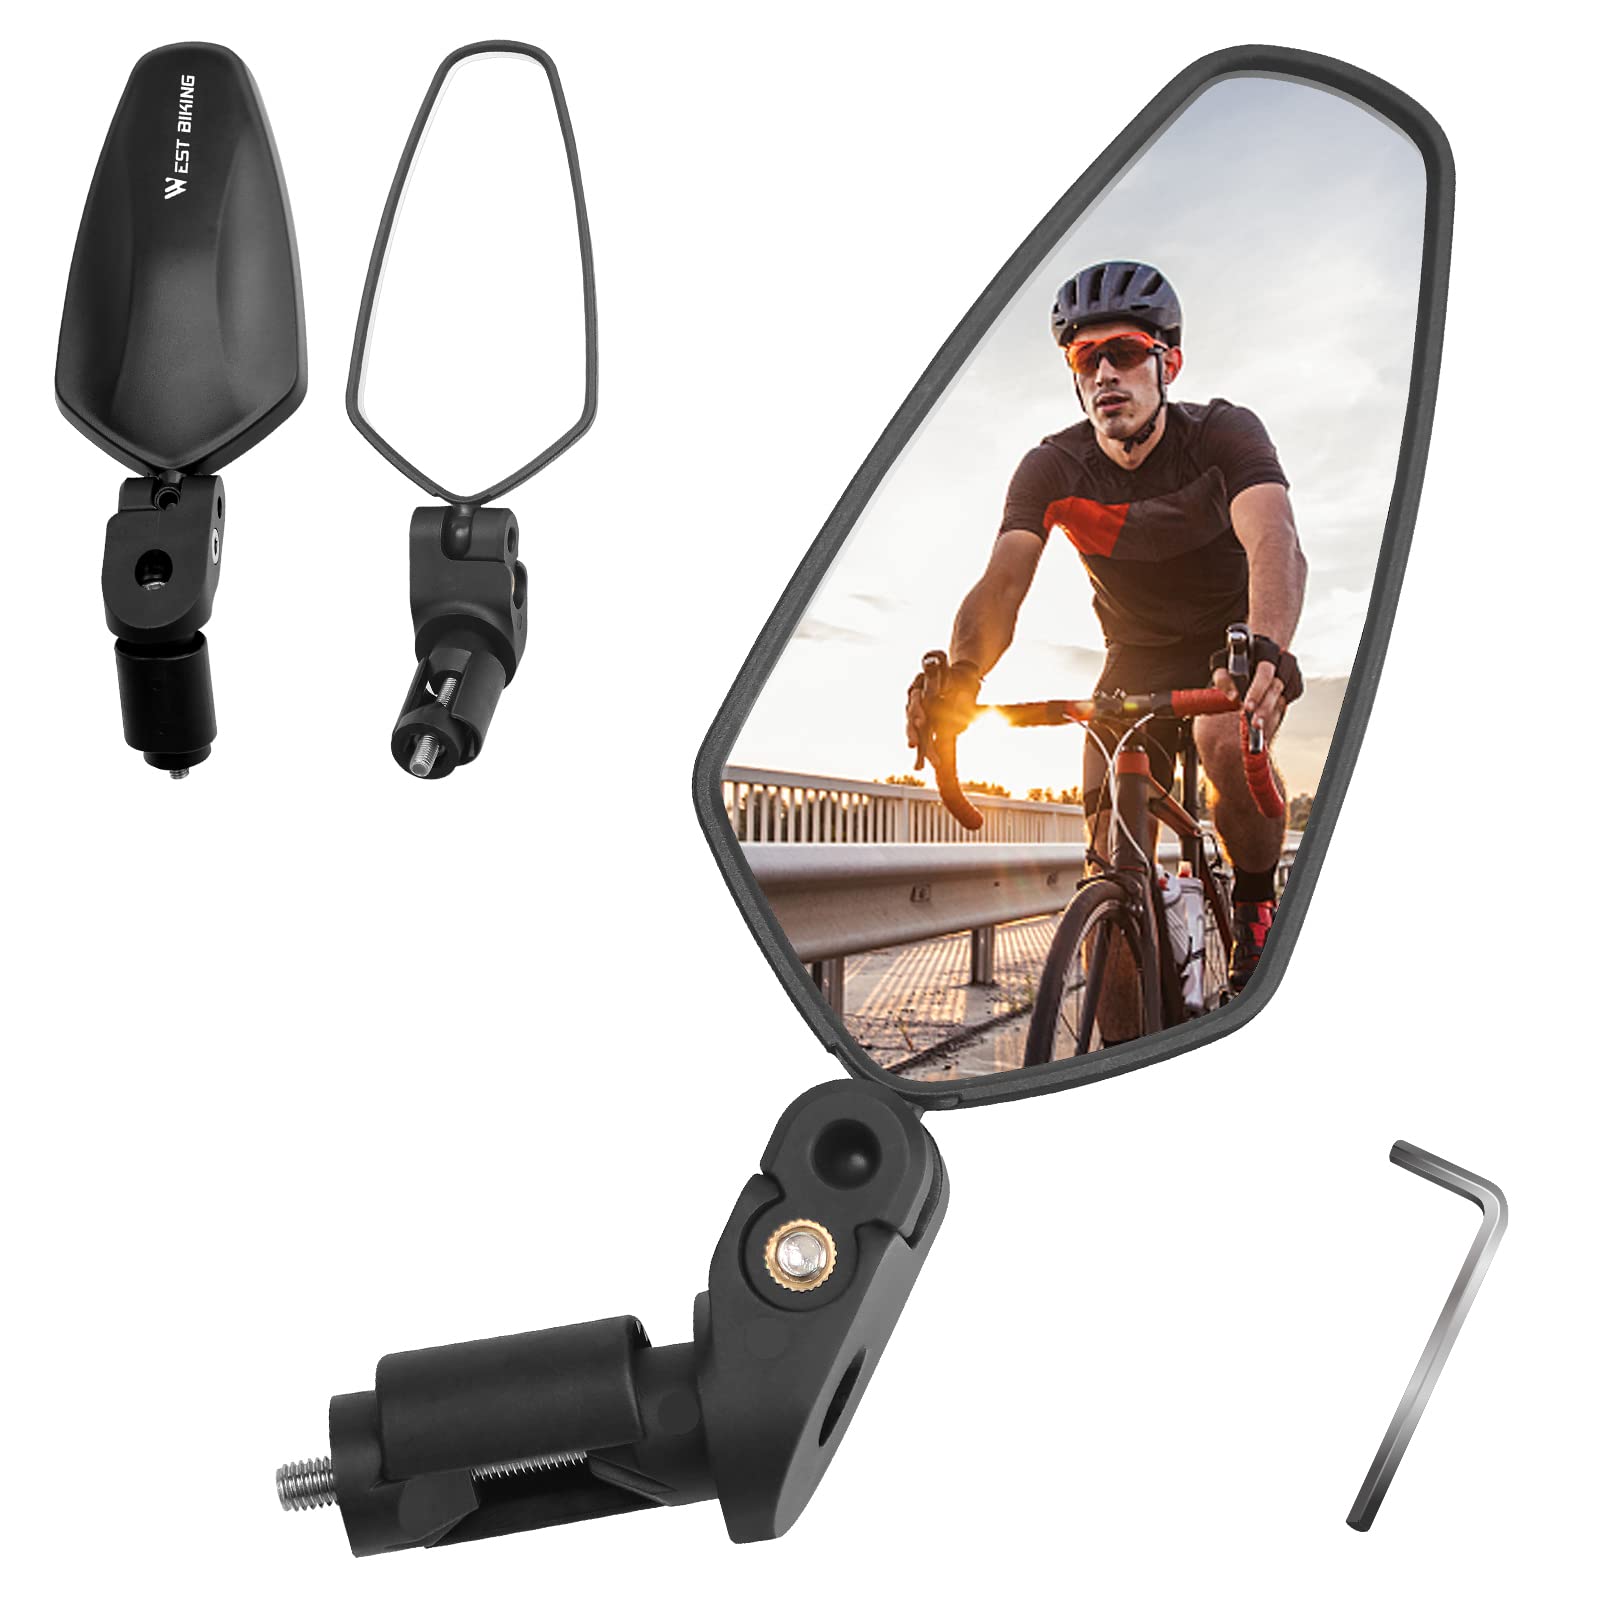 ZOOTSING Fahrradspiegel Extra Große Spiegelfläche, Fahrradspiegel für E-Bike, 360° Verstellbarer Rückspiegel, Fahrrad Zubehör für E-Bike Universal Fahrradrückspiegel(Schwarz) von ZOOTSING